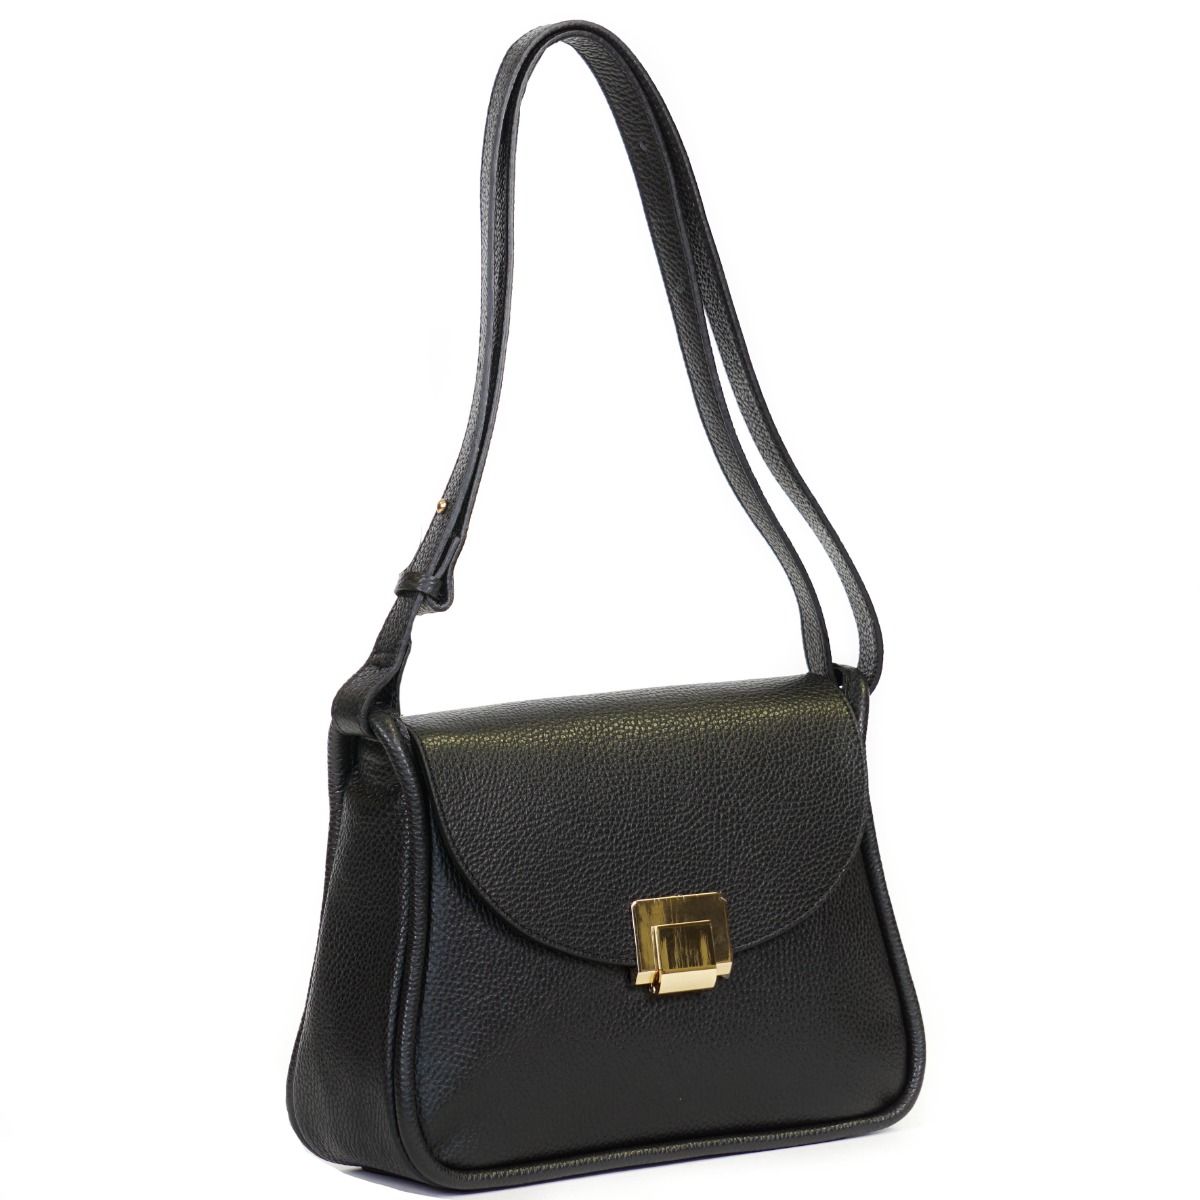 Elegant Bienen Davis vintage blue/black leather handbag from Saks - Ruby  Lane